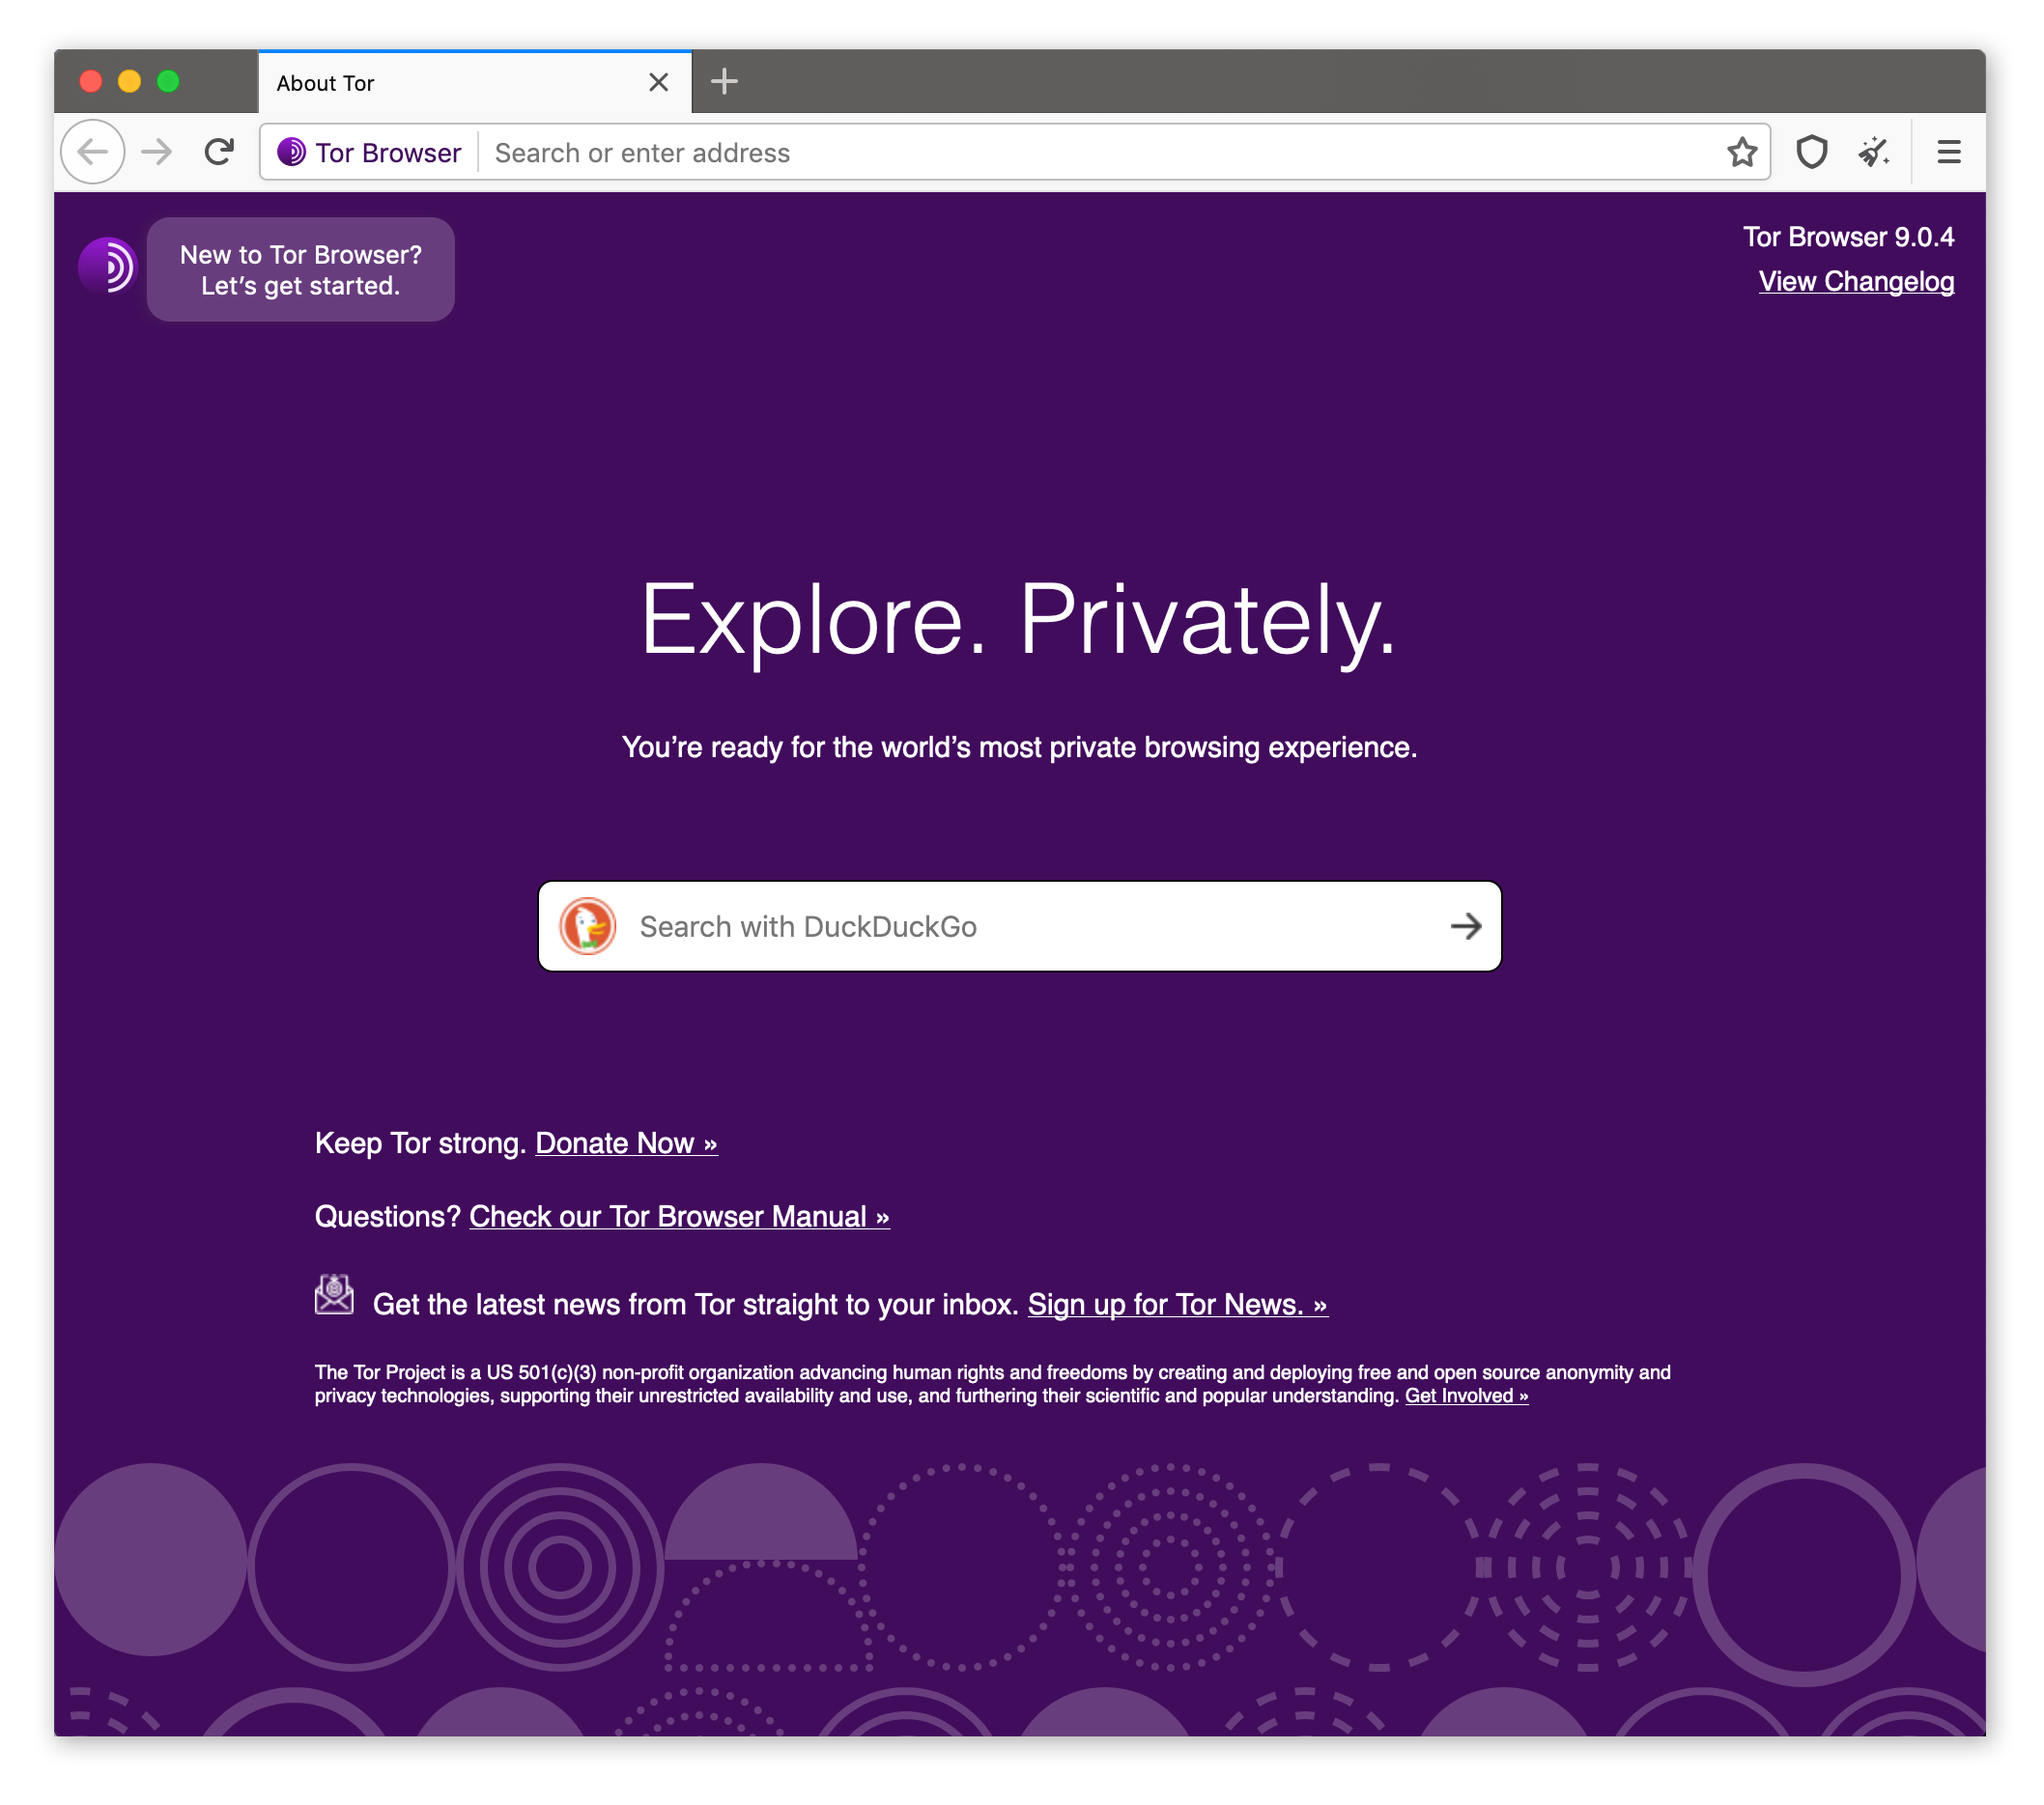 Dies ist der Tor Browser, der auf der Startseite standardmäßig die Suchmaschine „Duck Duck Go“ anzeigt.